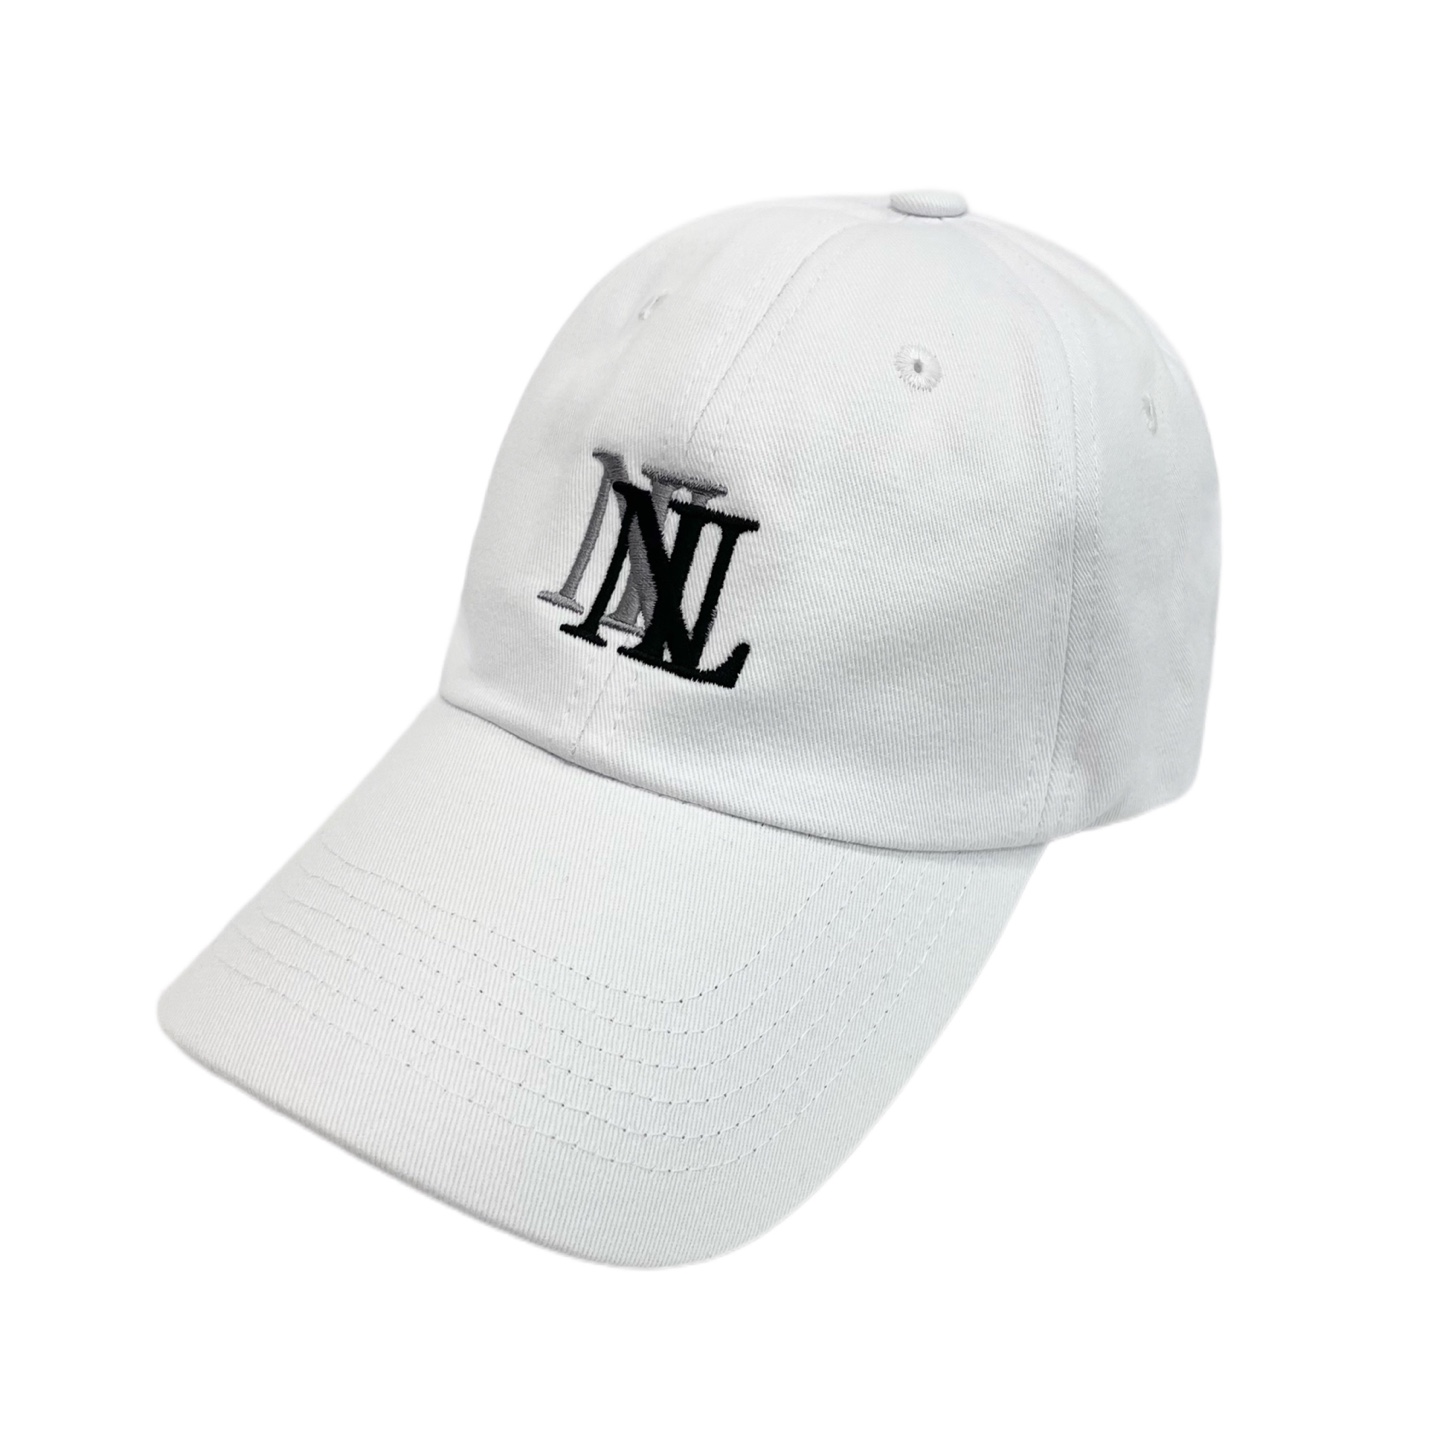 ヌーベルミエール ダブルロゴ ホワイト ベースボールキャップ 帽子